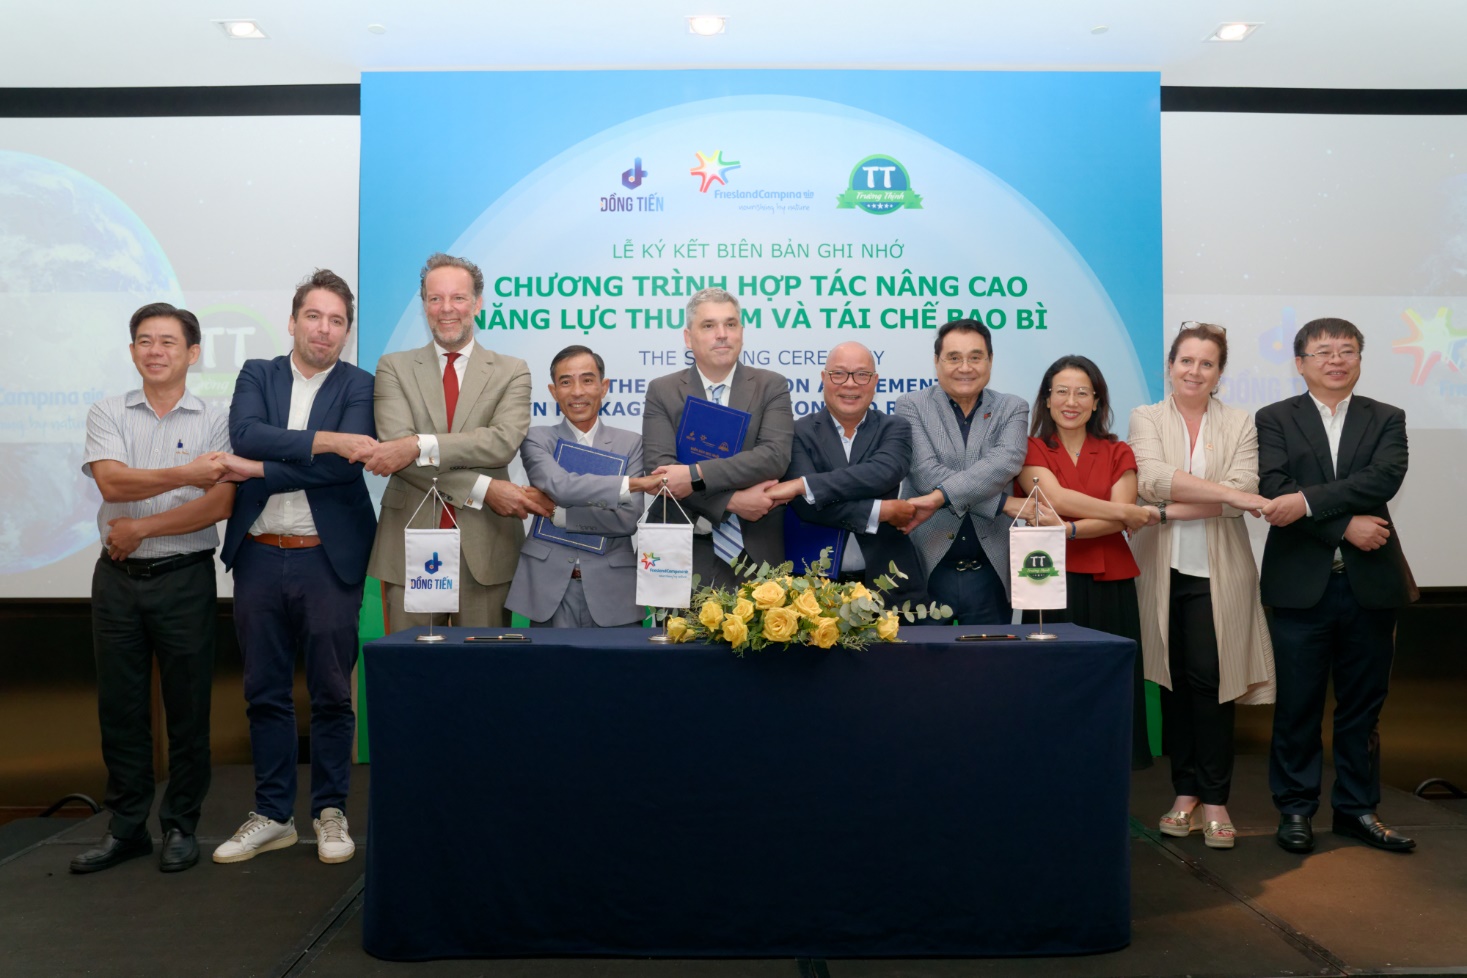 FrieslandCampina Việt Nam bắt tay cùng công ty Giấy Đồng Tiến Bình Dương và công ty Cơ khí Xây dựng Trường Thịnh nâng cao năng lực thu gom và tái chế bao bì, chủ động thực thi EPR